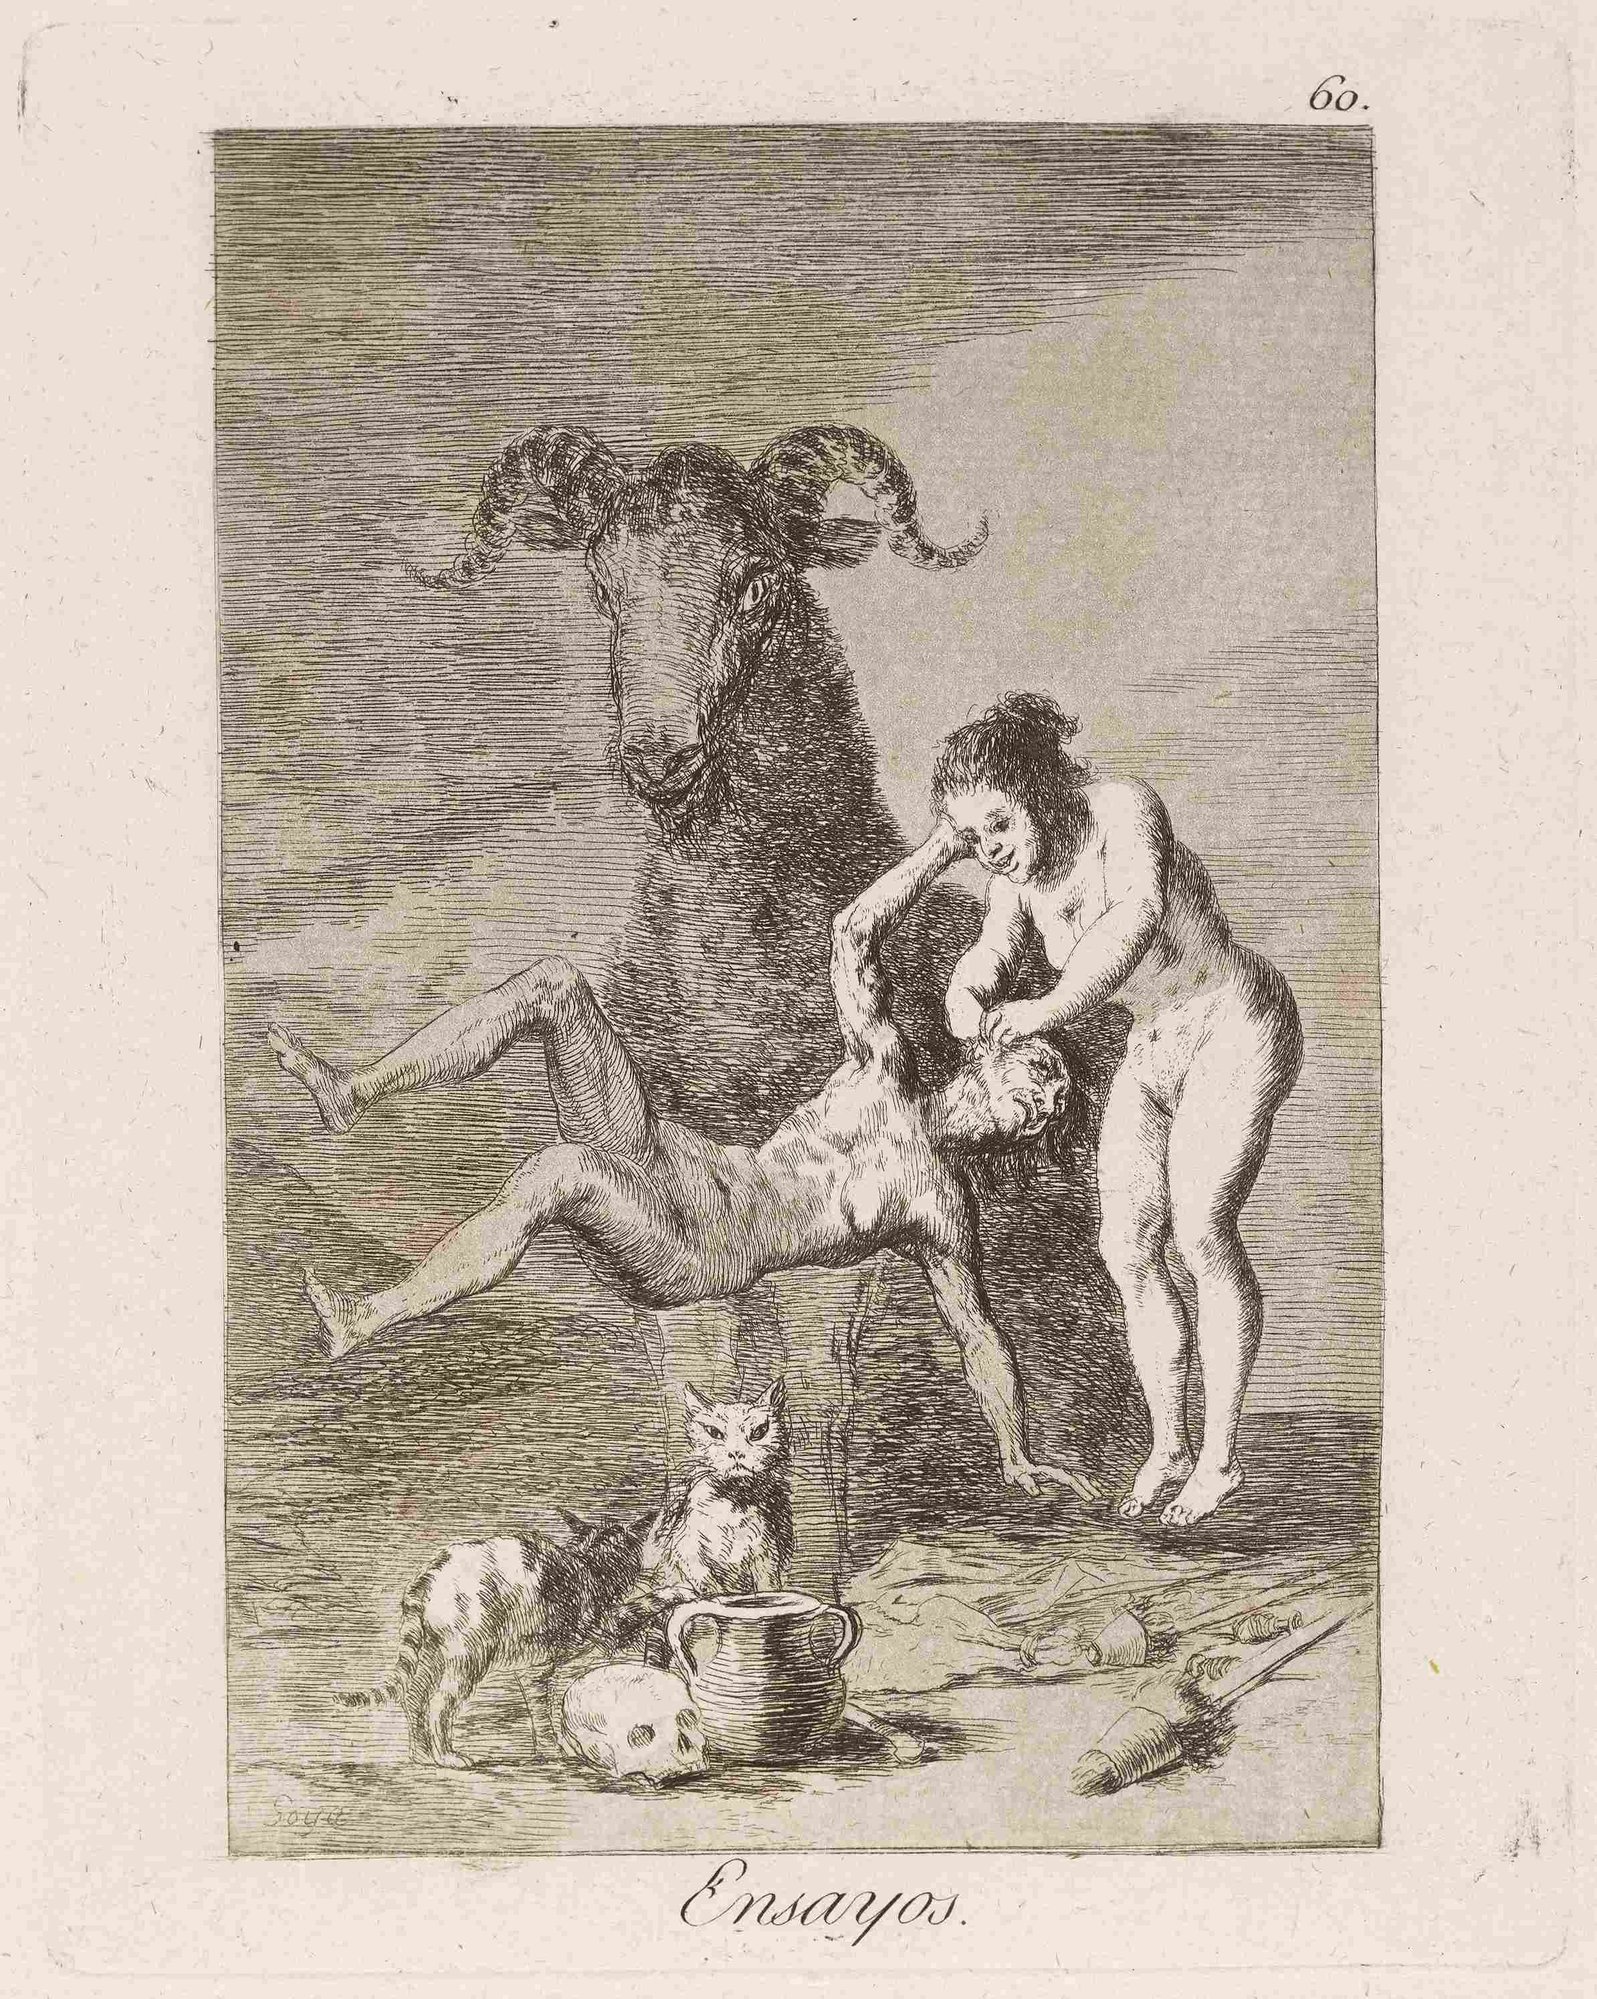 Francisco de Goya, Ensayos. (Trials.) (1796-1797)